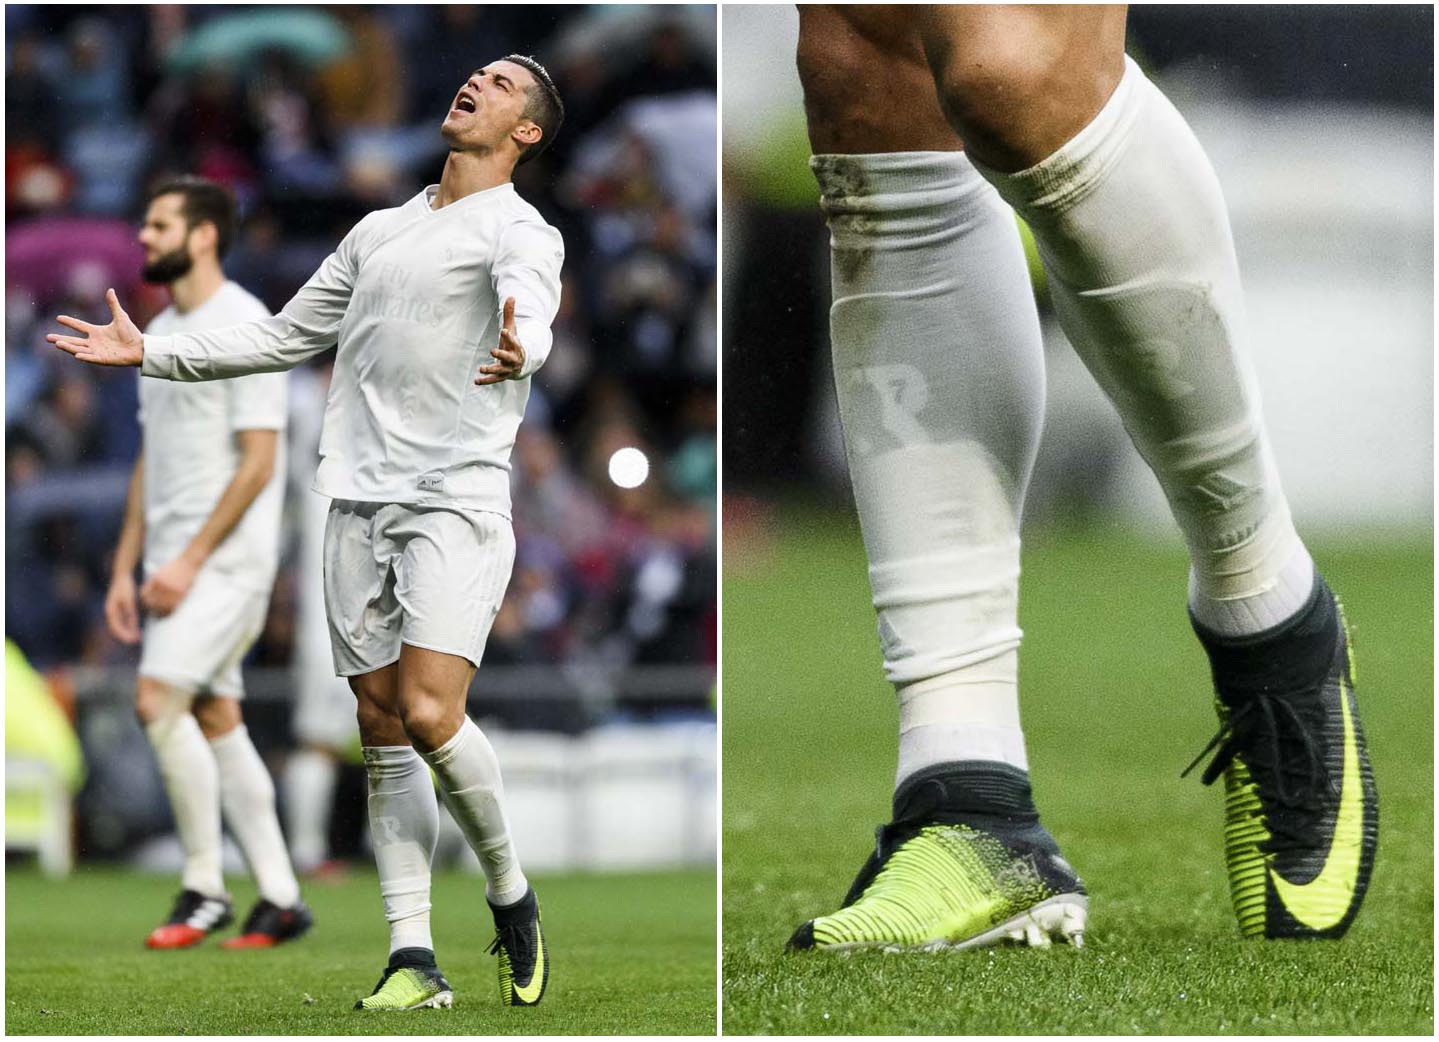 Ronaldo CR7 mang lên chân giày bóng đá Nike Mercurial Superfly V Discovery